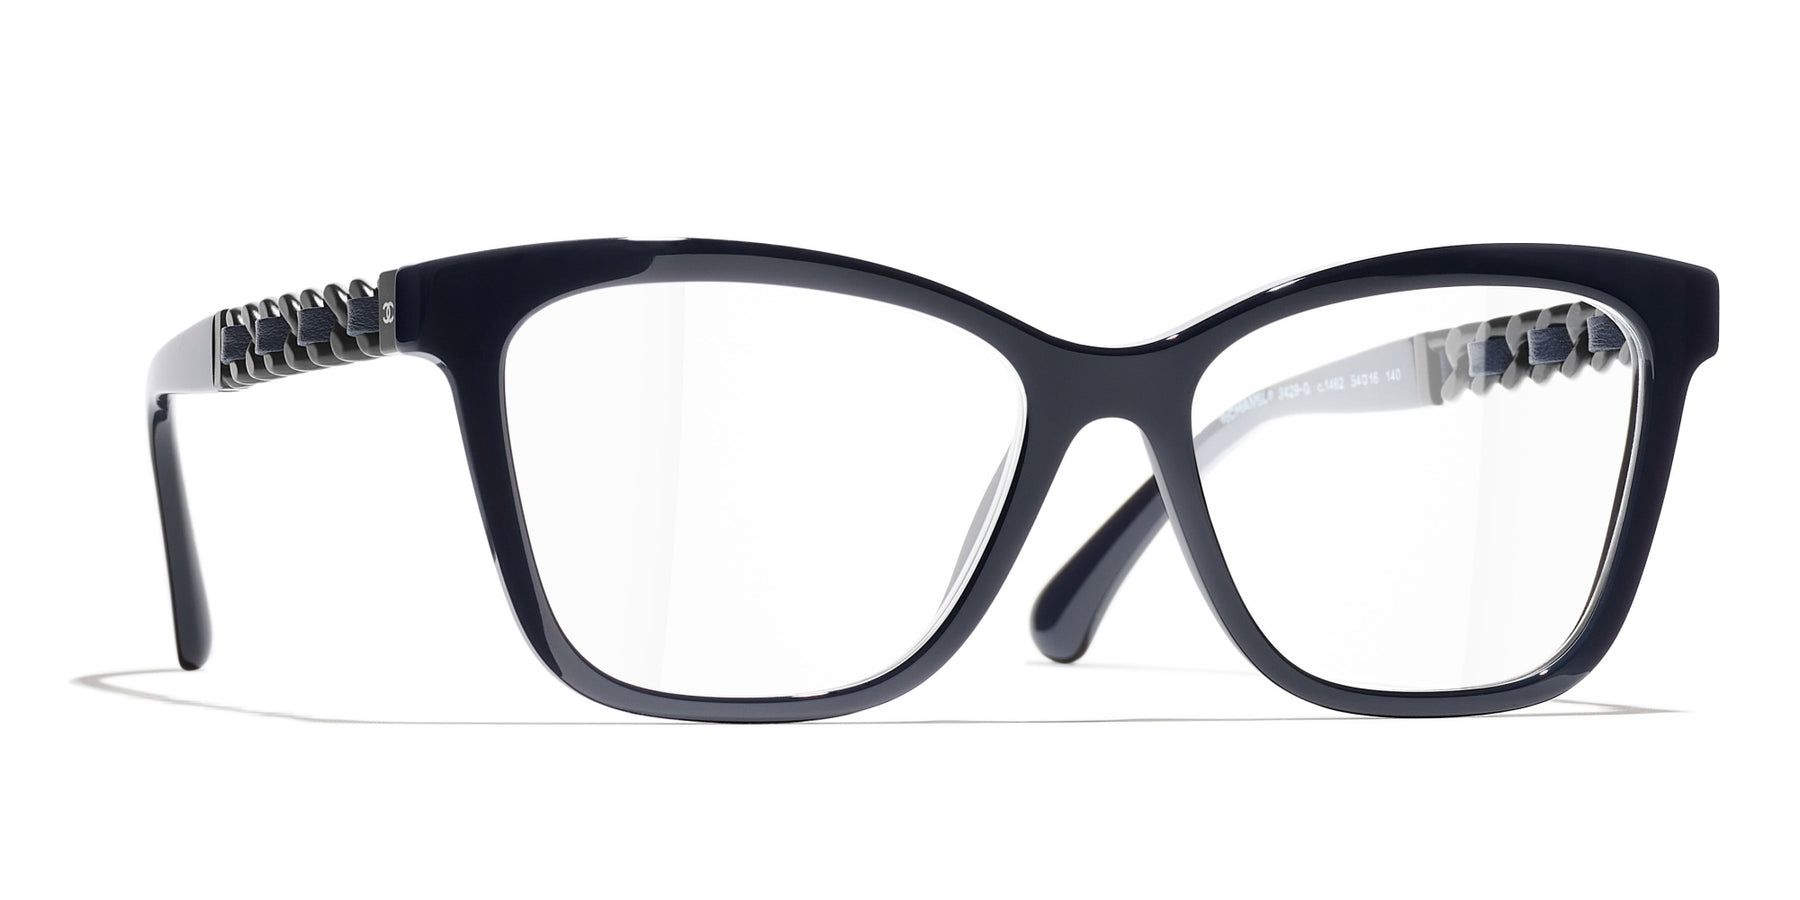 Shop CHANEL Unisex Square Eyeglasses by cocofashion